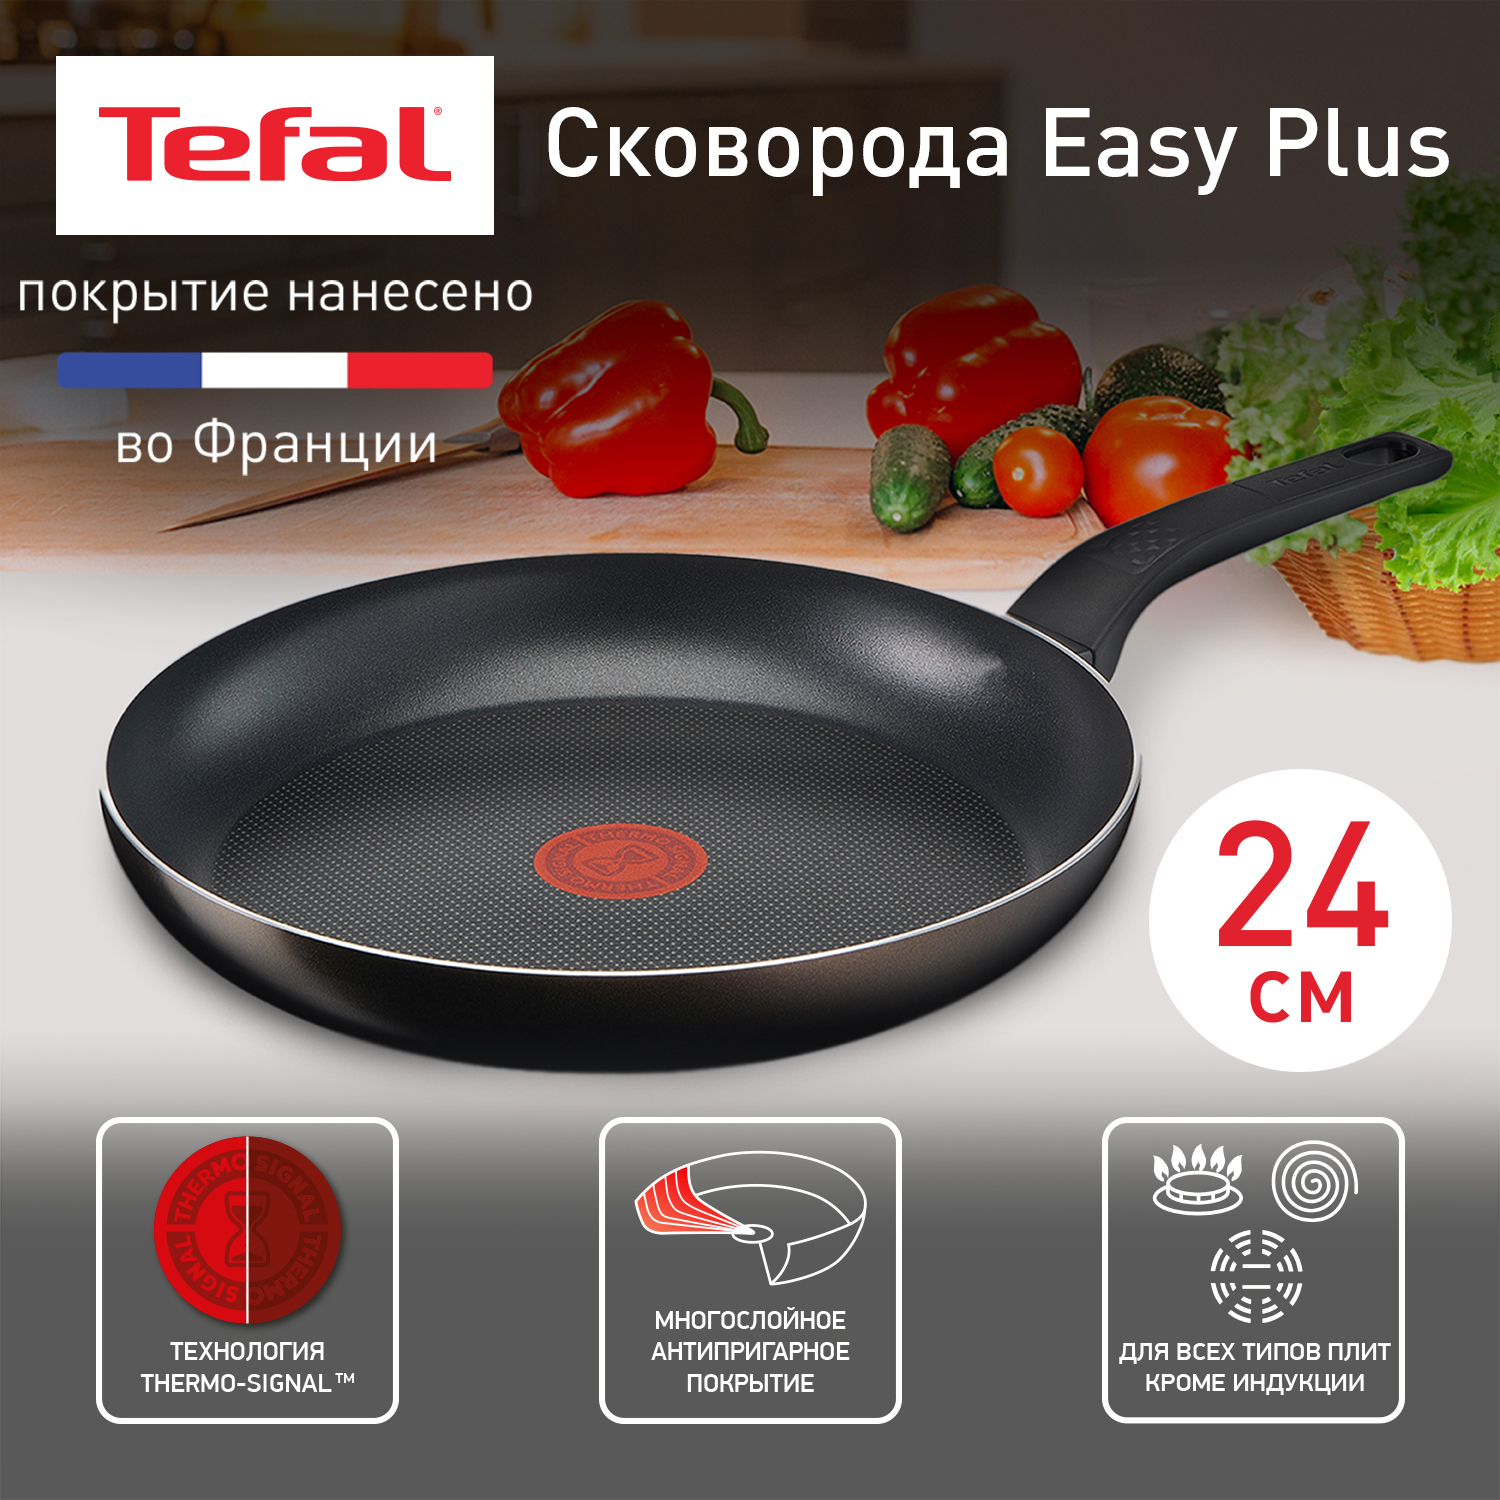 Сковорода универсальная Tefal Easy Plus 24 см черный 04206124